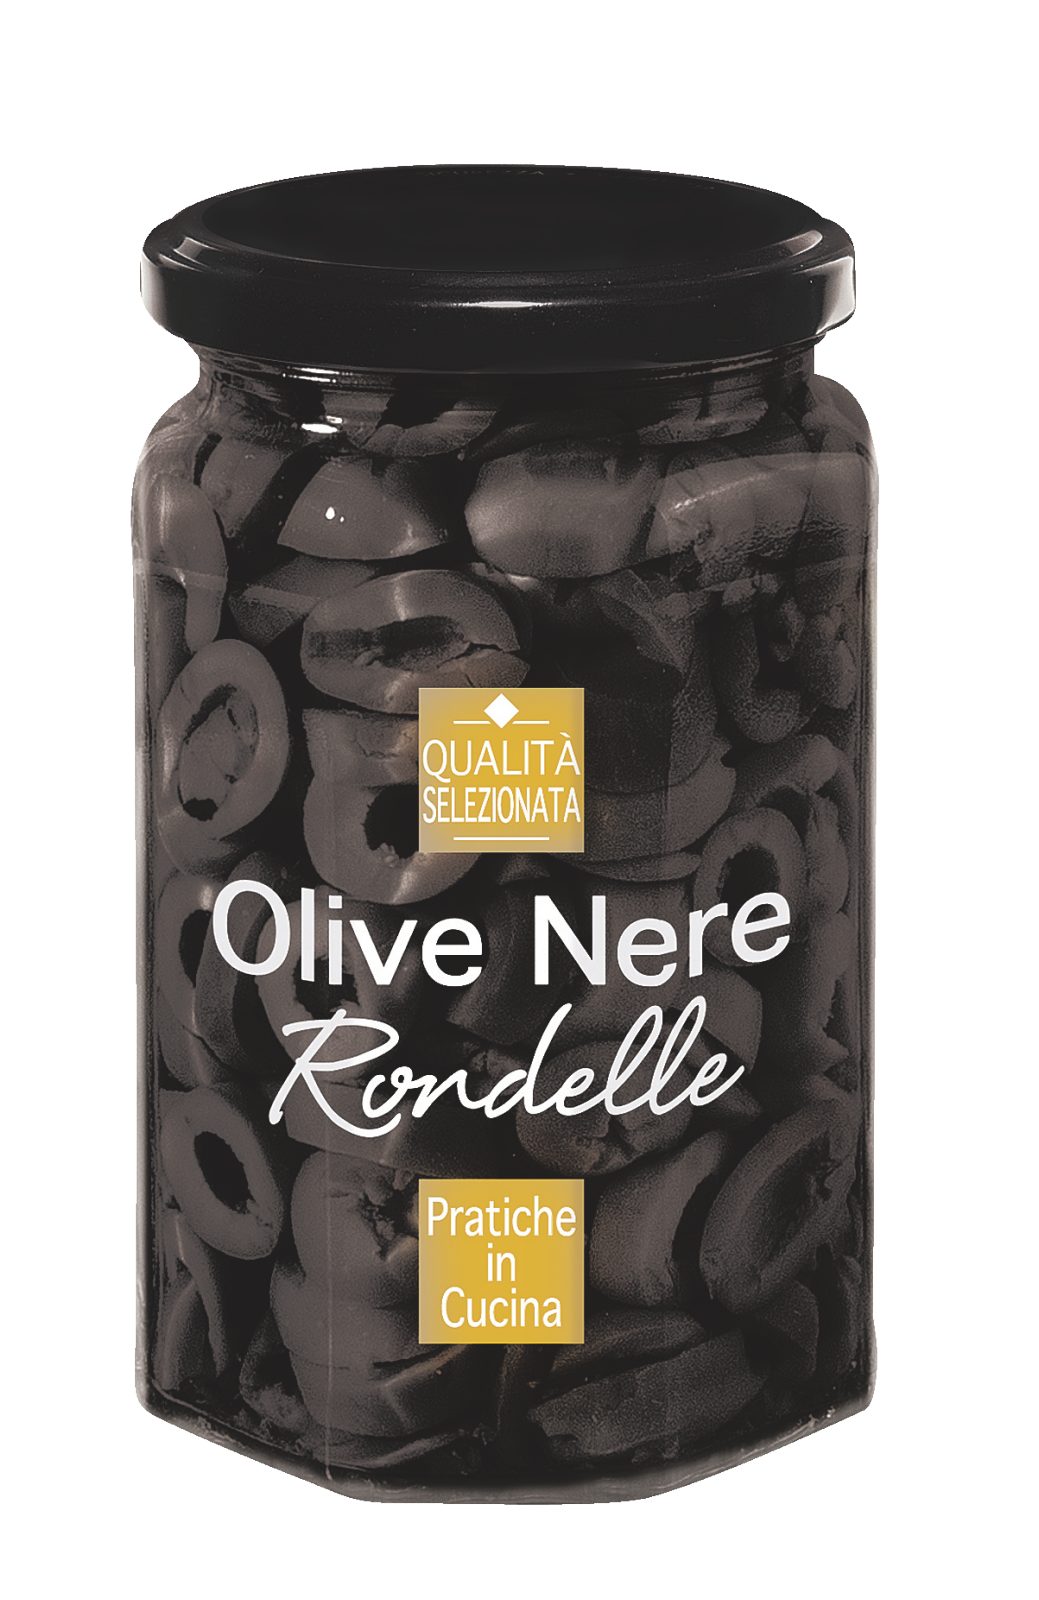 Olive Nere Rondelle